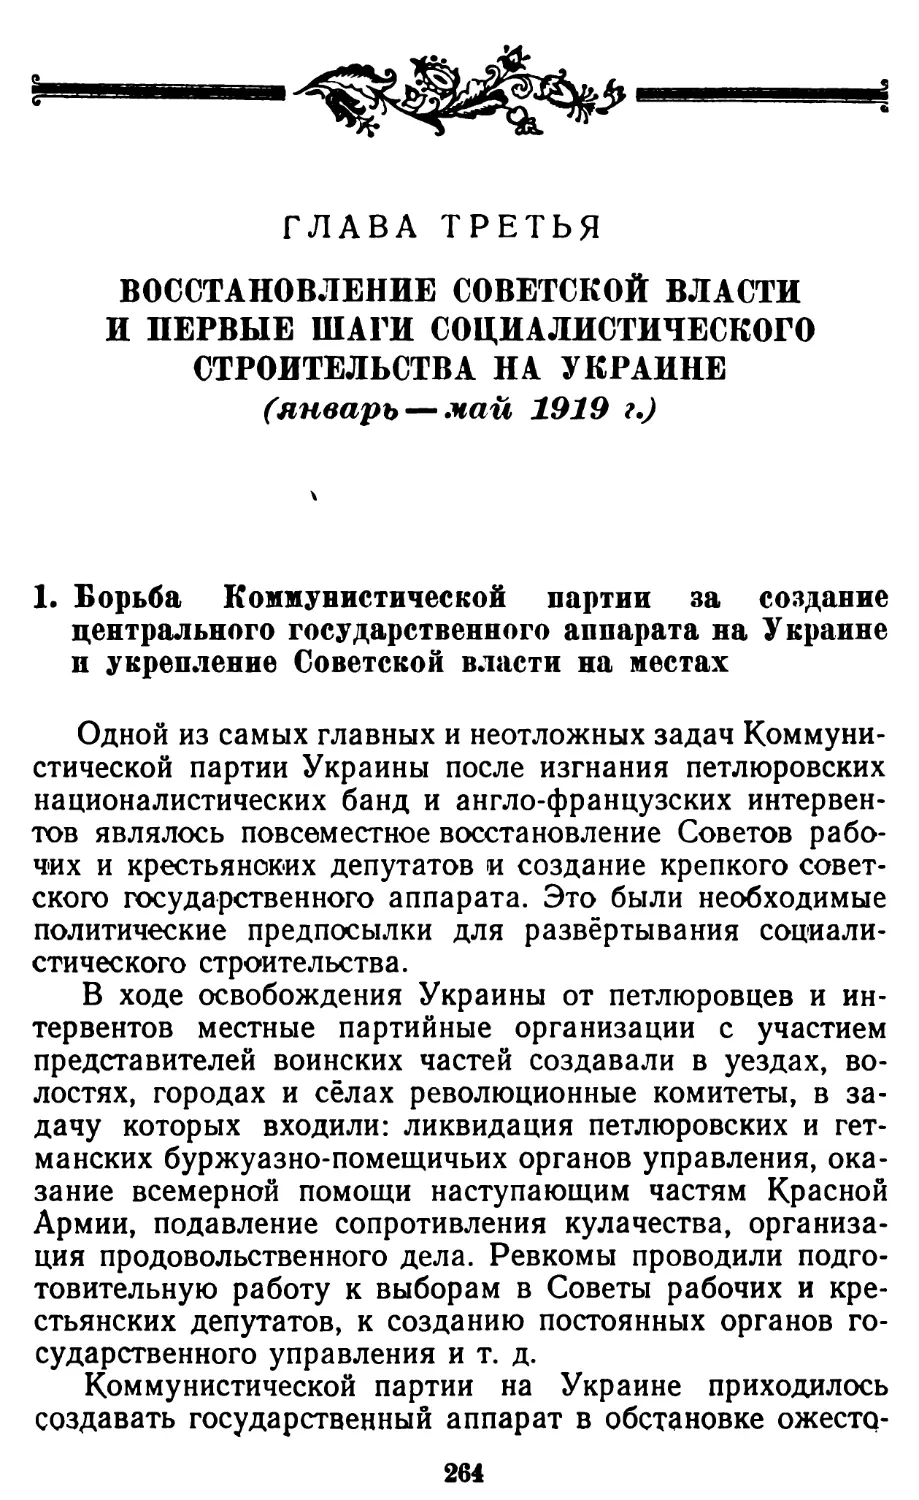 1. Борьба Коммунистической партии за создание центрального государственного аппарата на Украине и укрепление Советской власти на местах